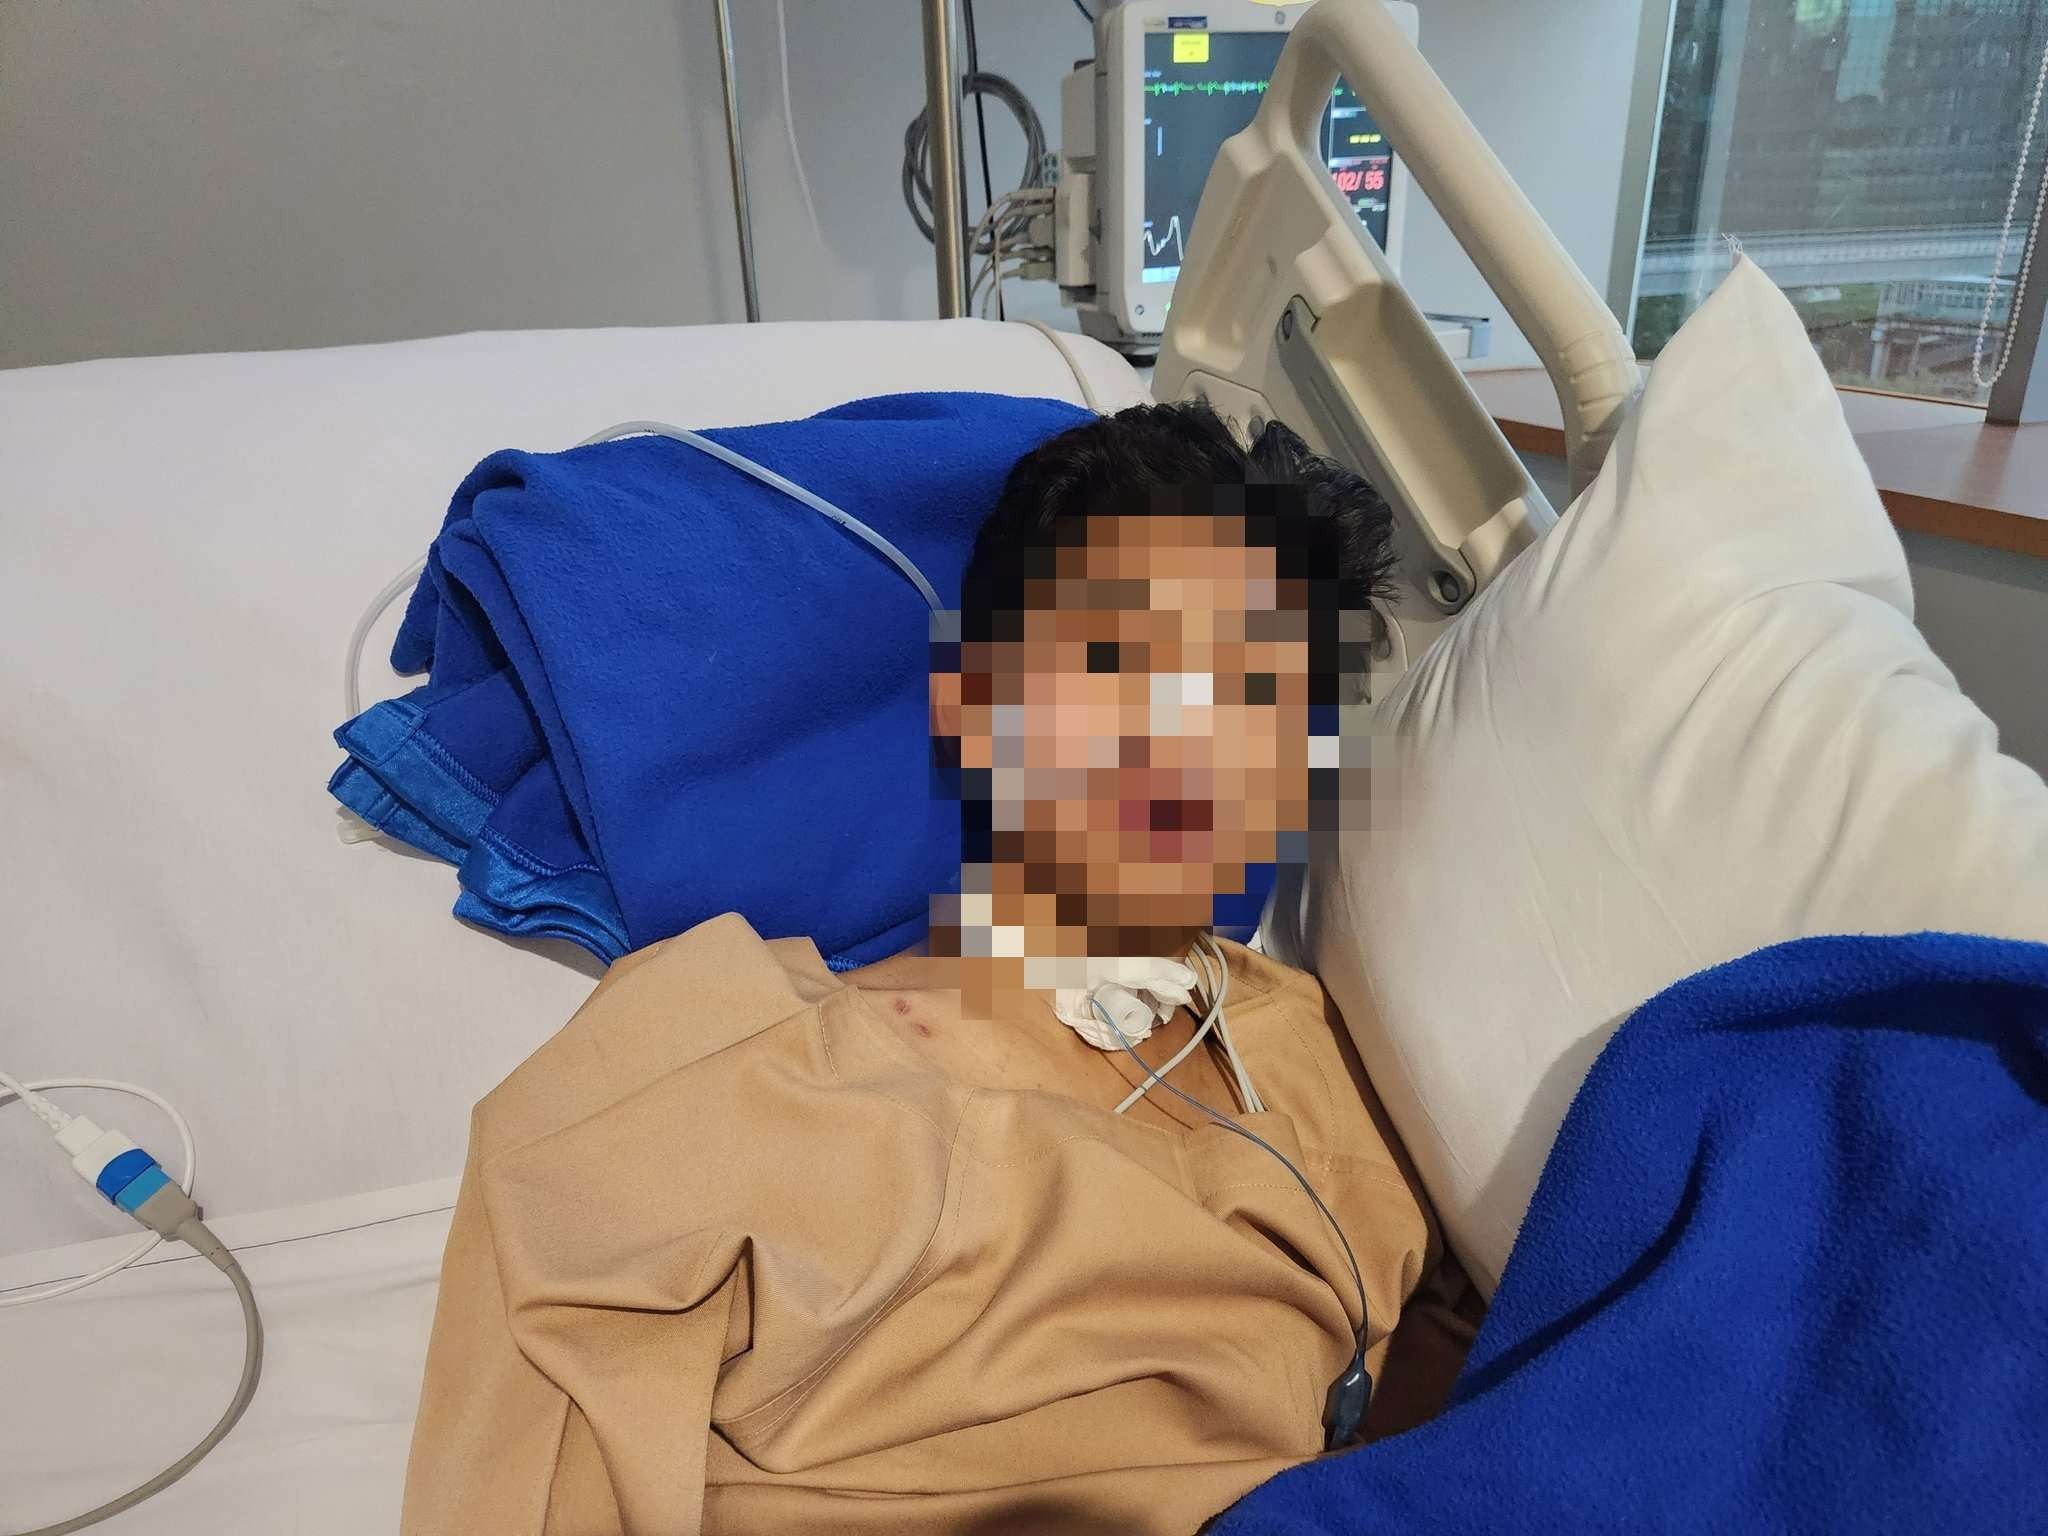 David Ozora masih dirawat di ICU Rumah Sakit Mayapada Kuningan, Jakarta Selatan, hingga hari ke-43 usai dianiaya Mario Dandy Satrio. (Foto: Twitter)